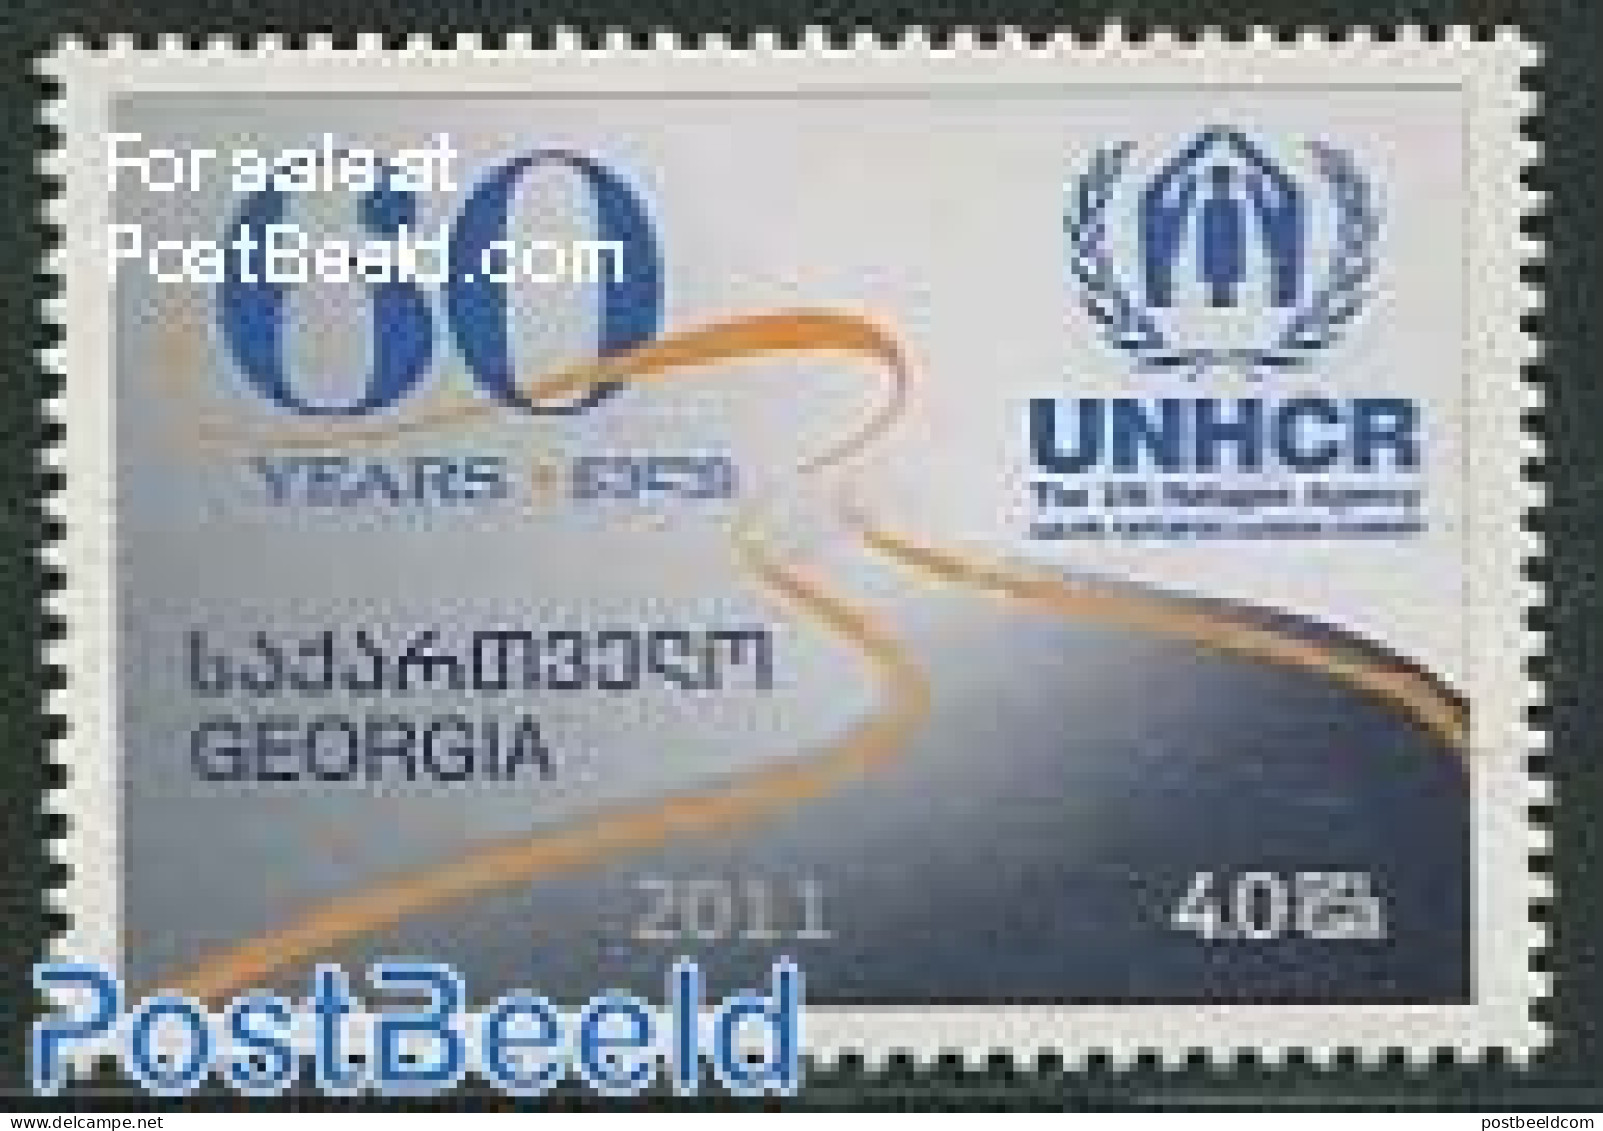 Georgia 2011 60 Years UNHCR 1v, Mint NH, History - Refugees - Vluchtelingen